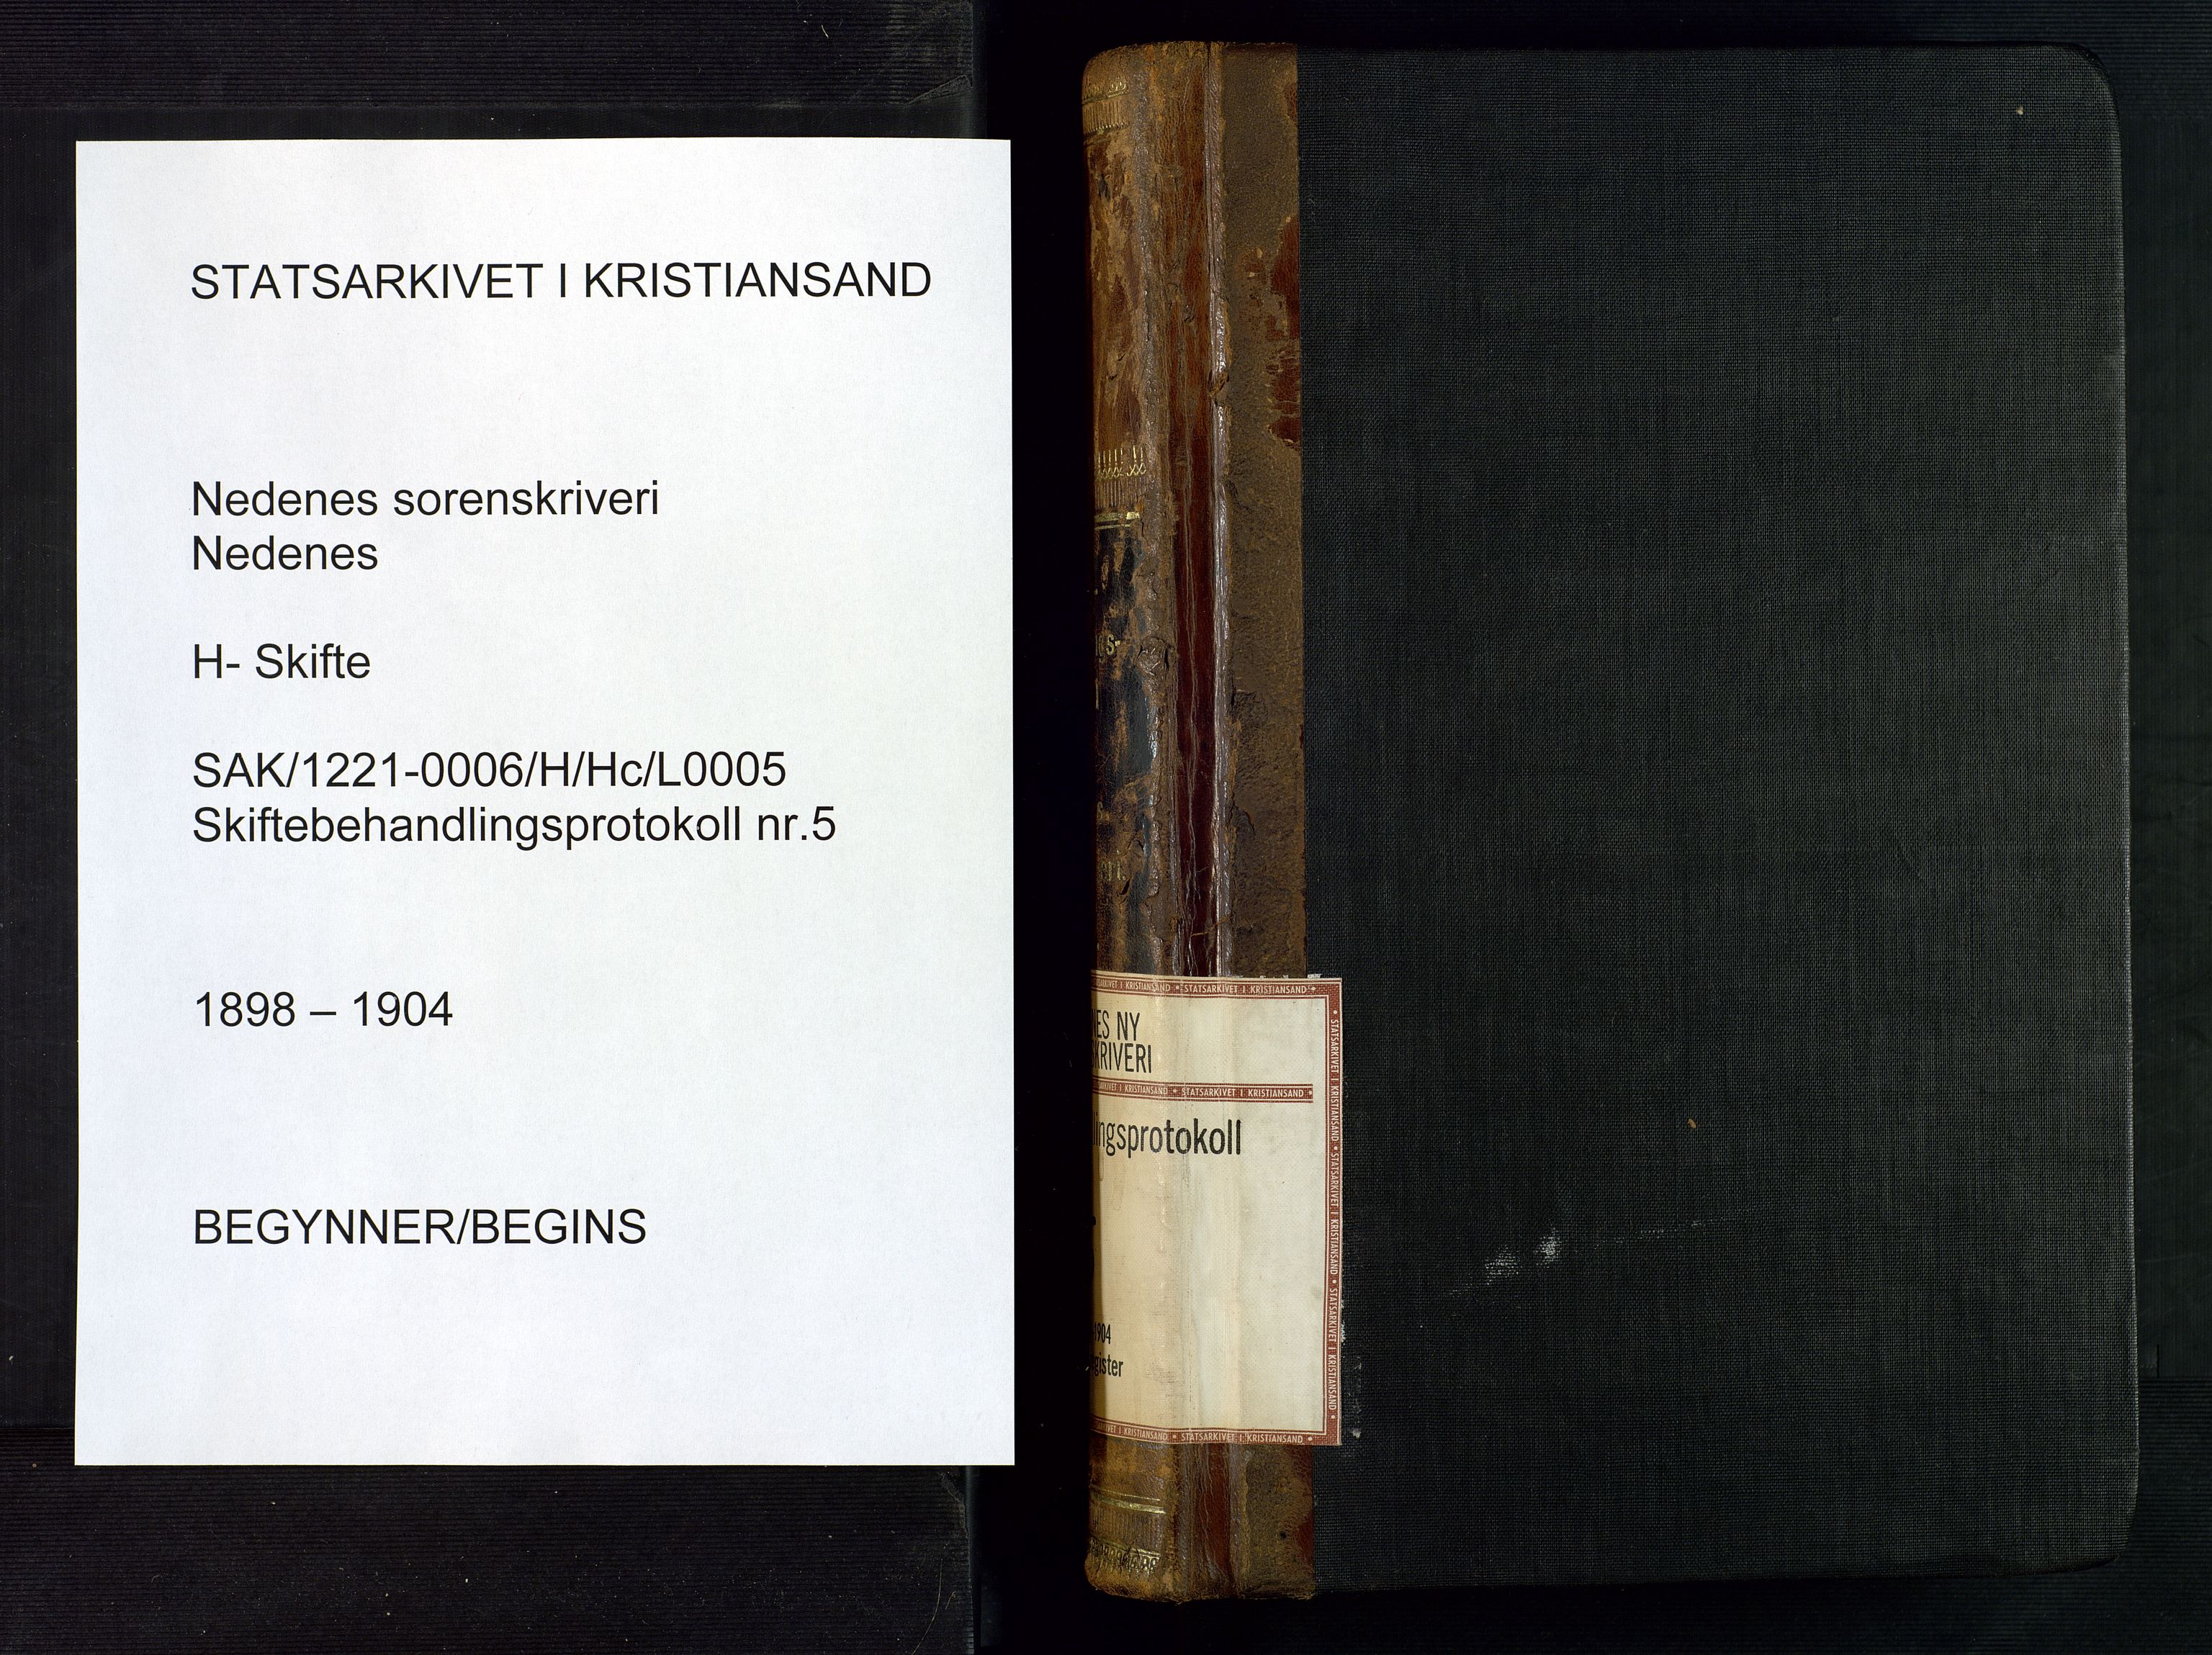 Nedenes sorenskriveri, SAK/1221-0006/H/Hc/L0005: Skiftebehandlingsprotokoll nr 5 med register, 1898-1904